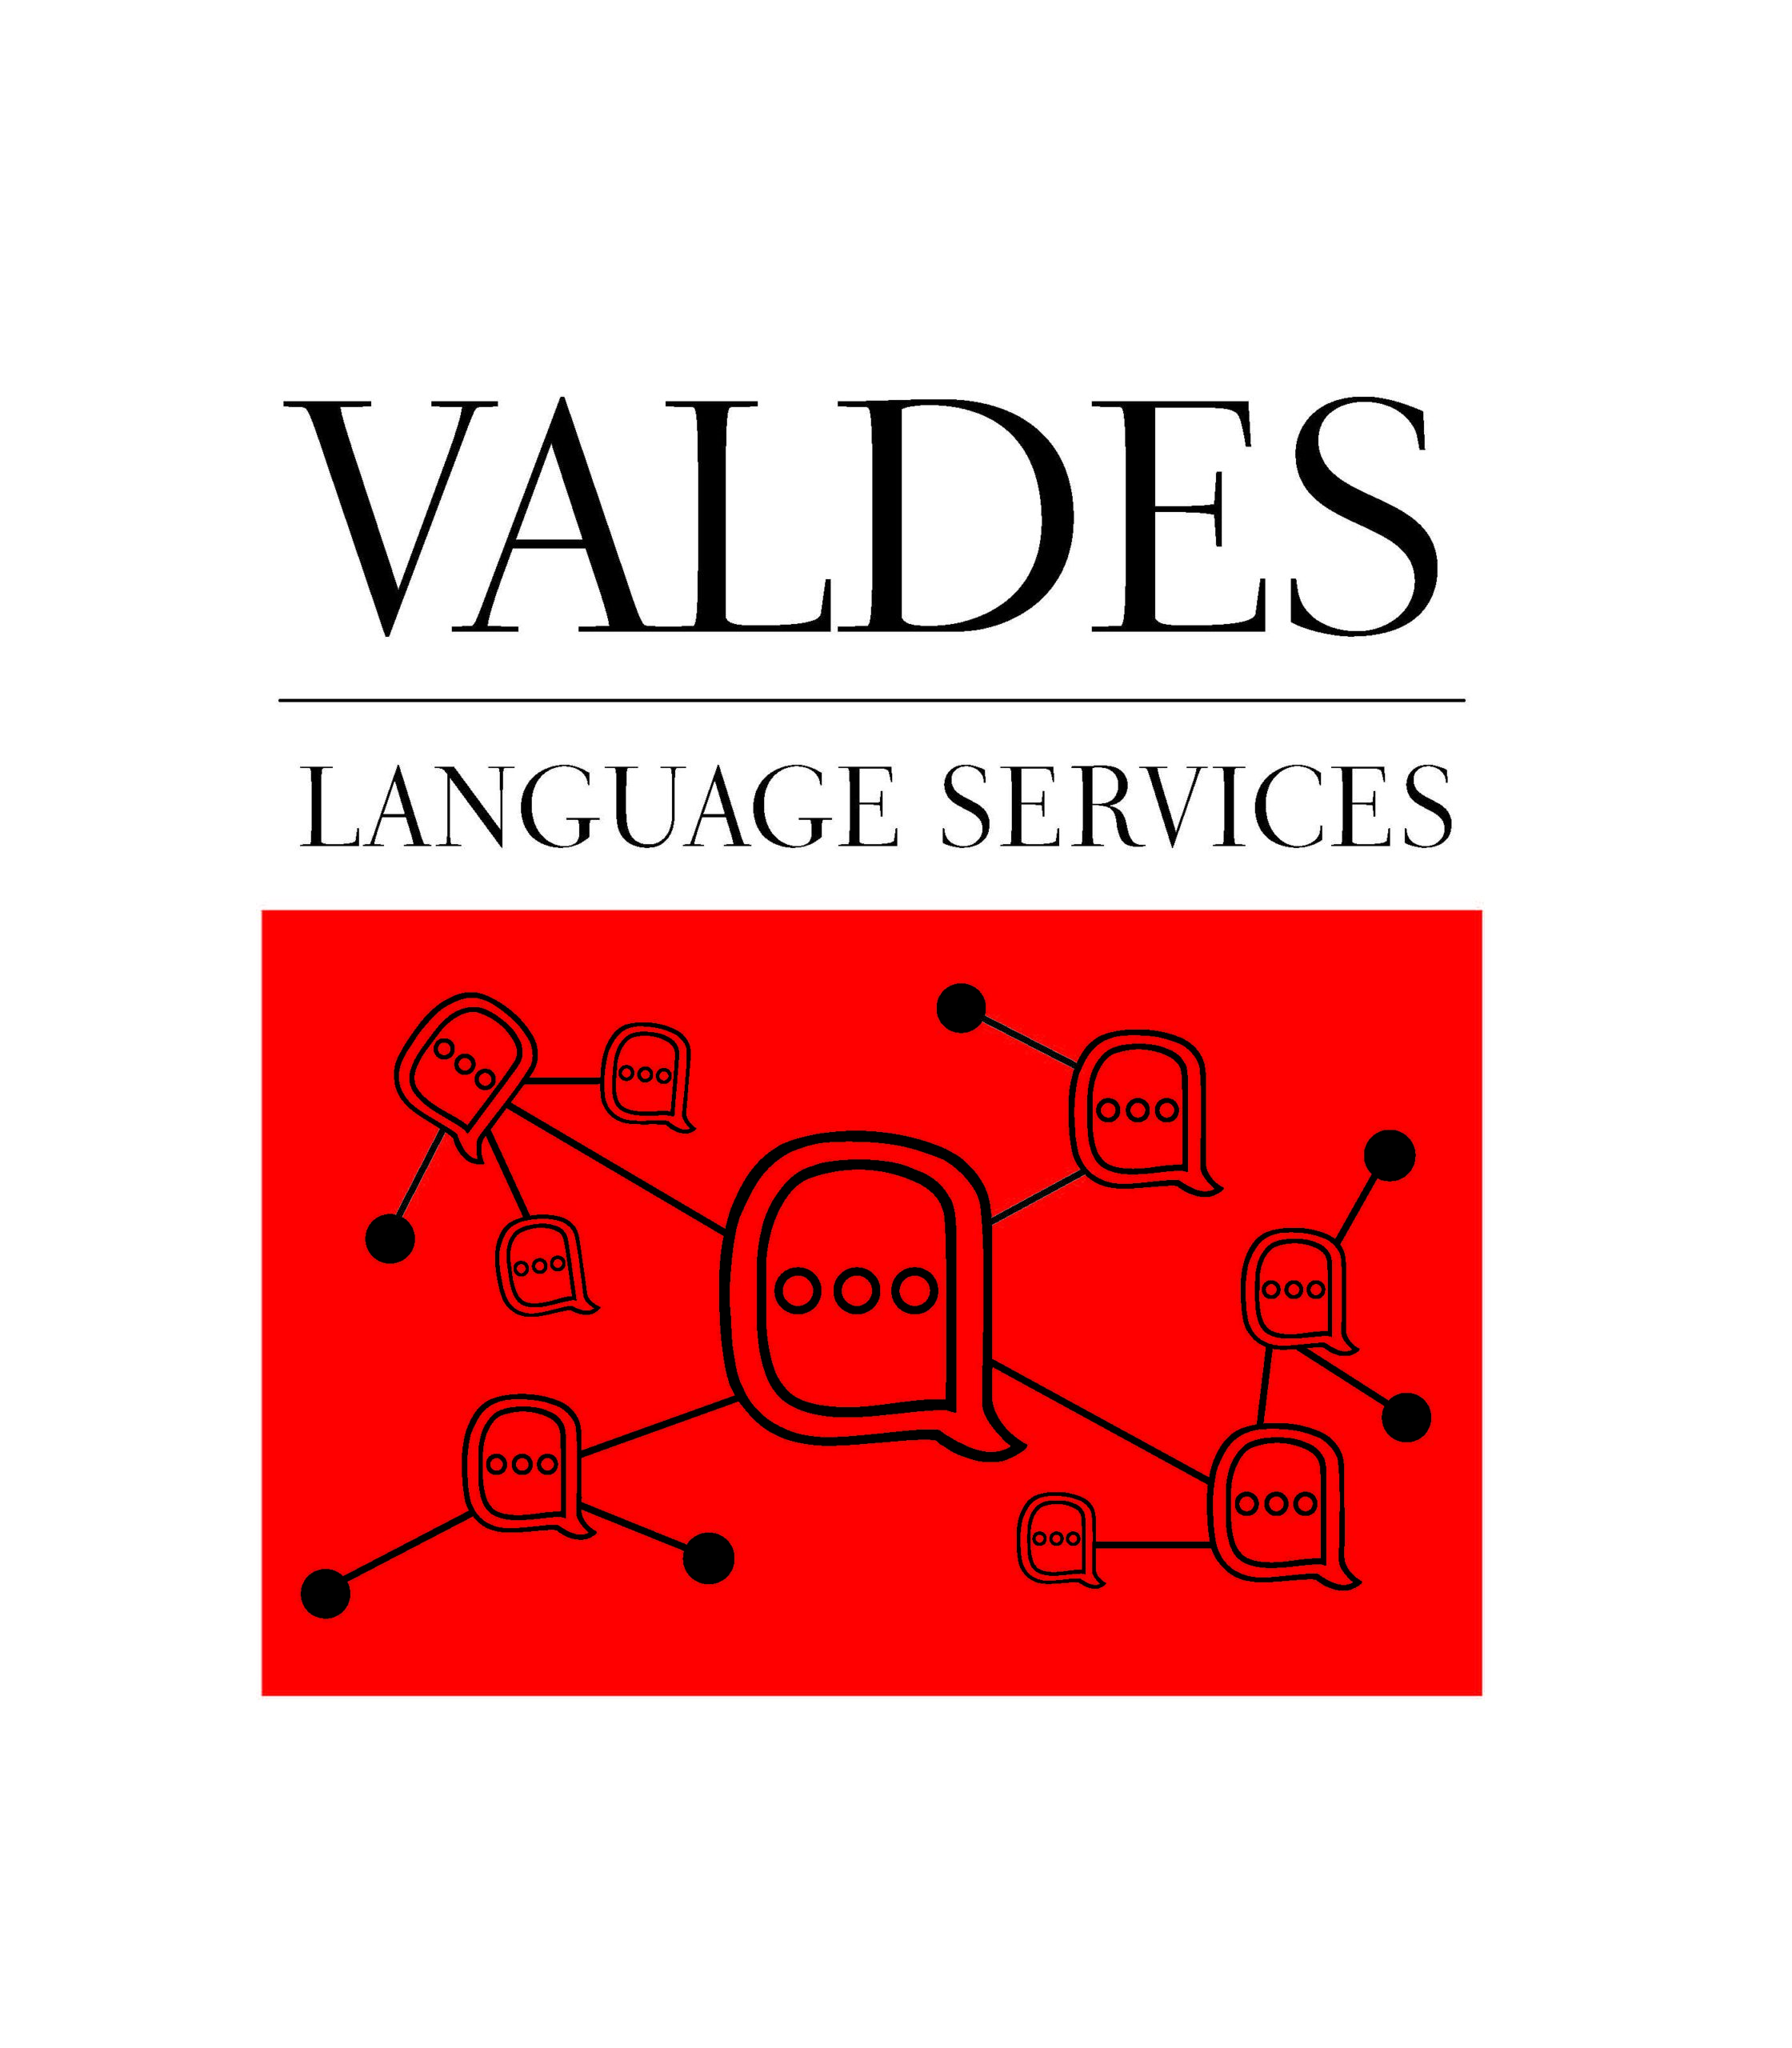 VLS logo vector file